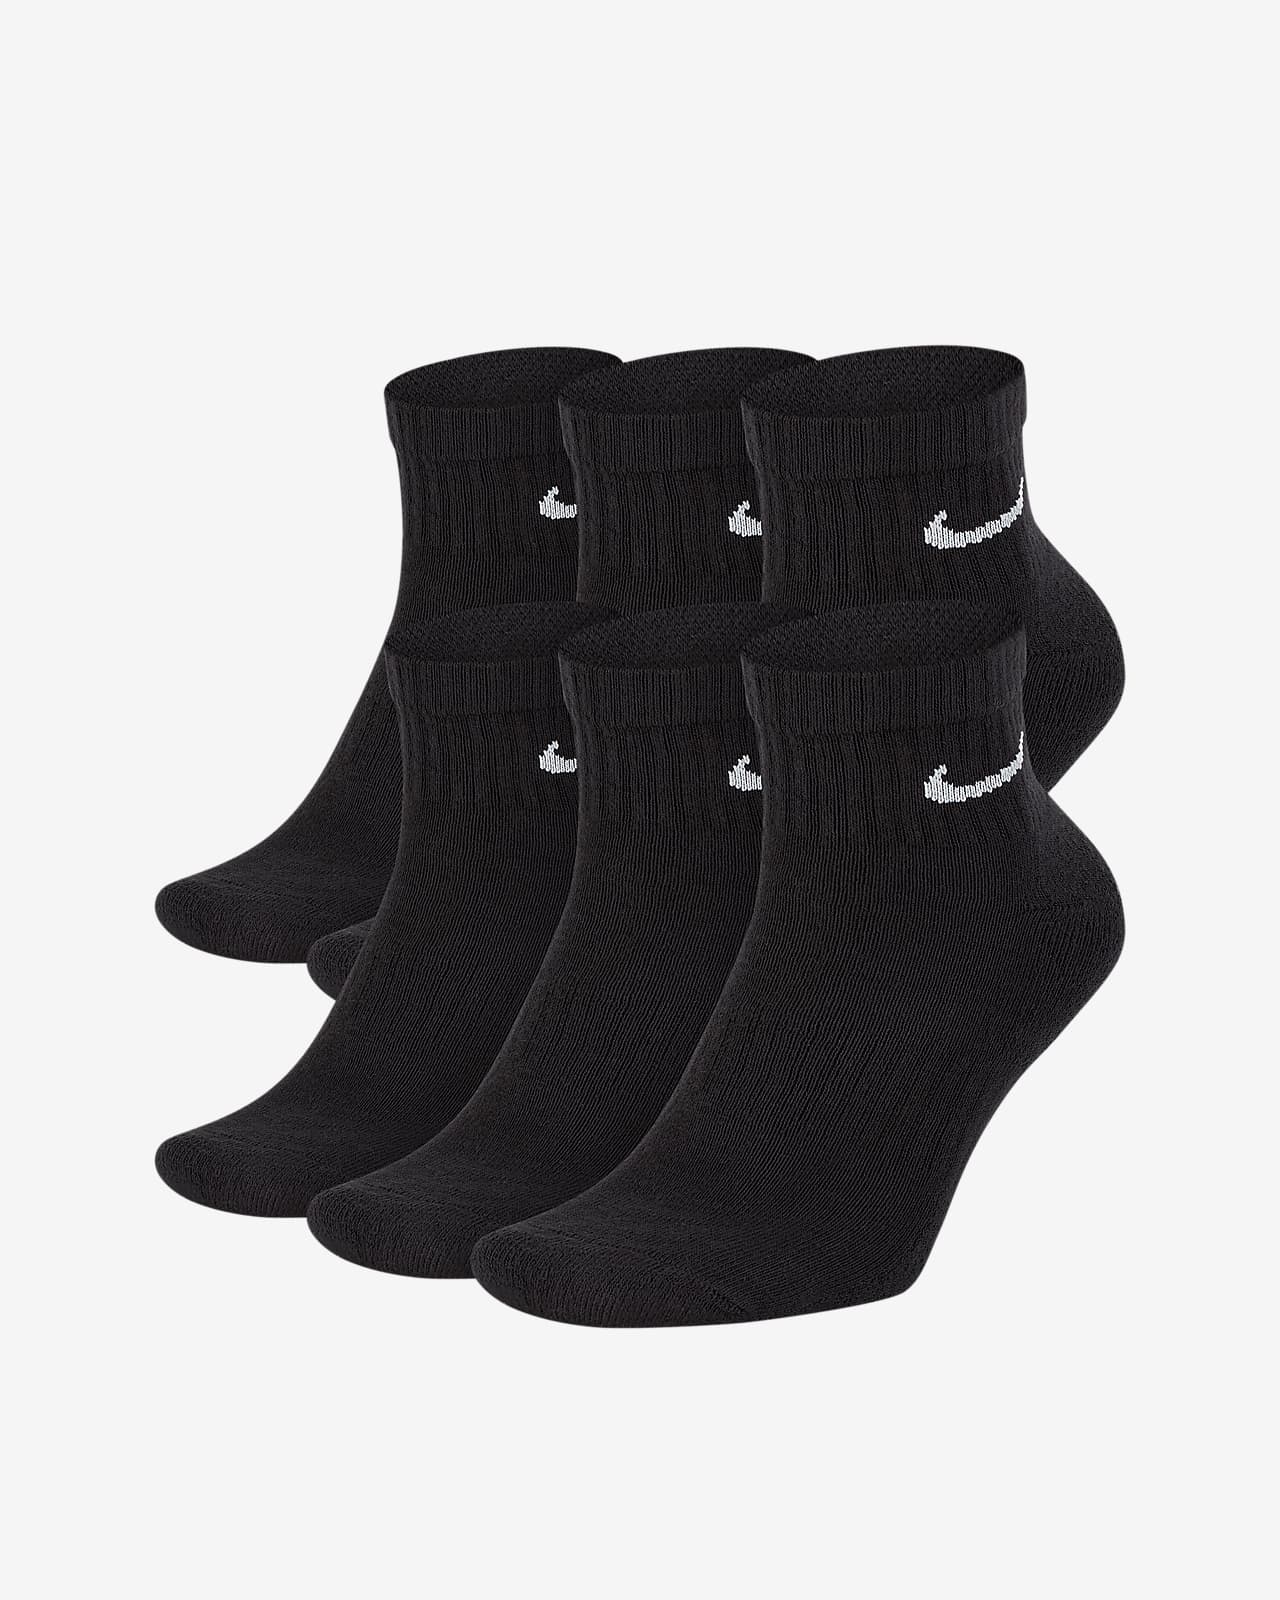 Calze da training alla caviglia Nike Everyday Cushioned (6 paia)